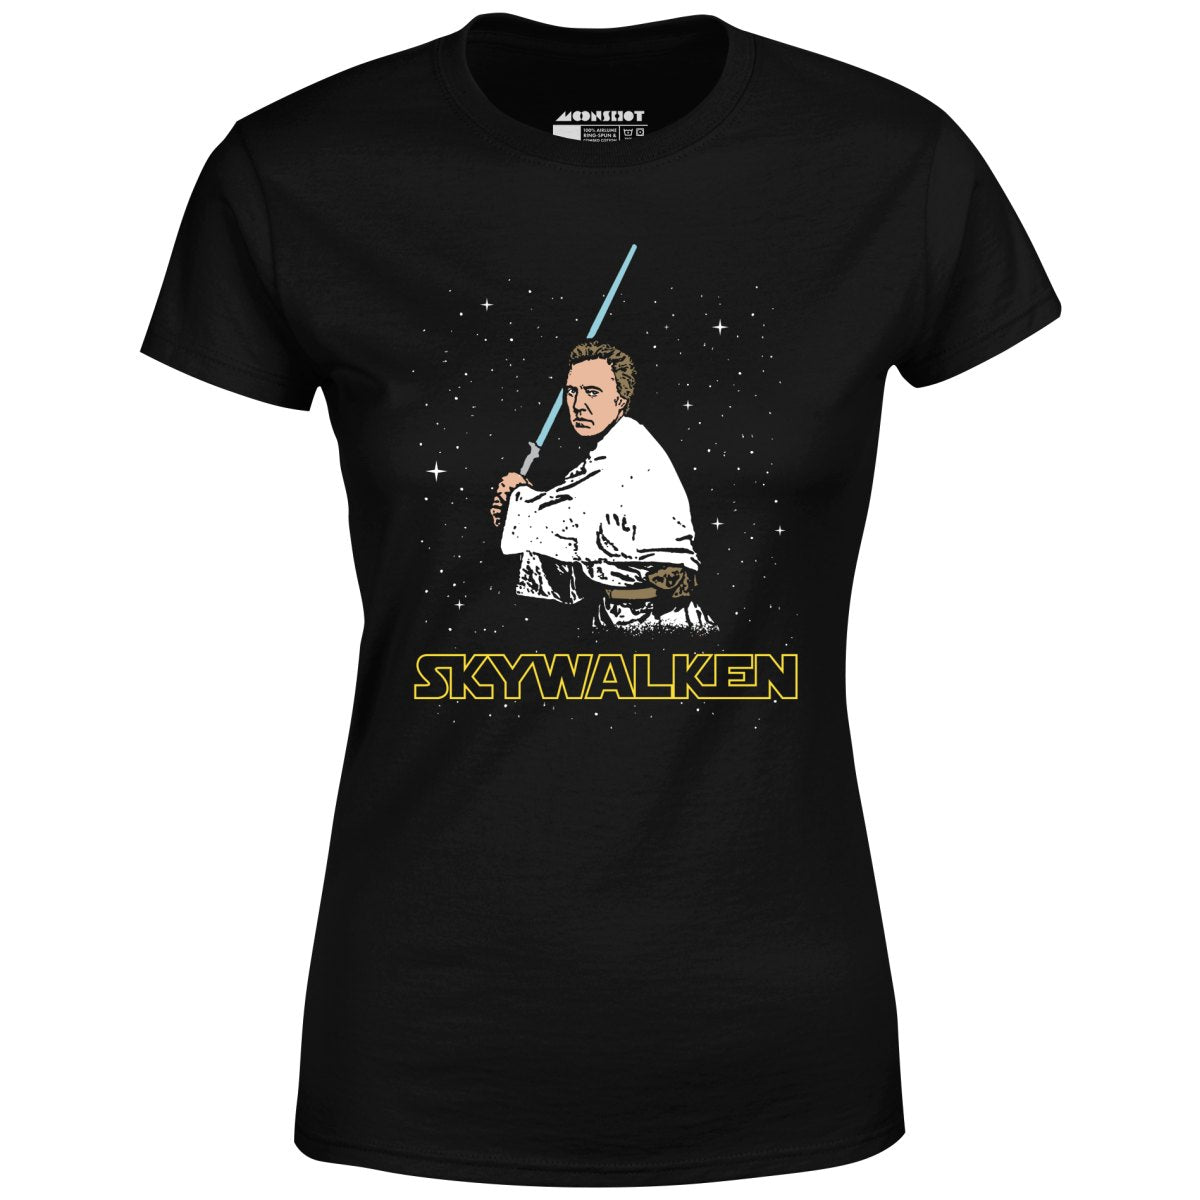 Skywalken - Women's T-Shirt